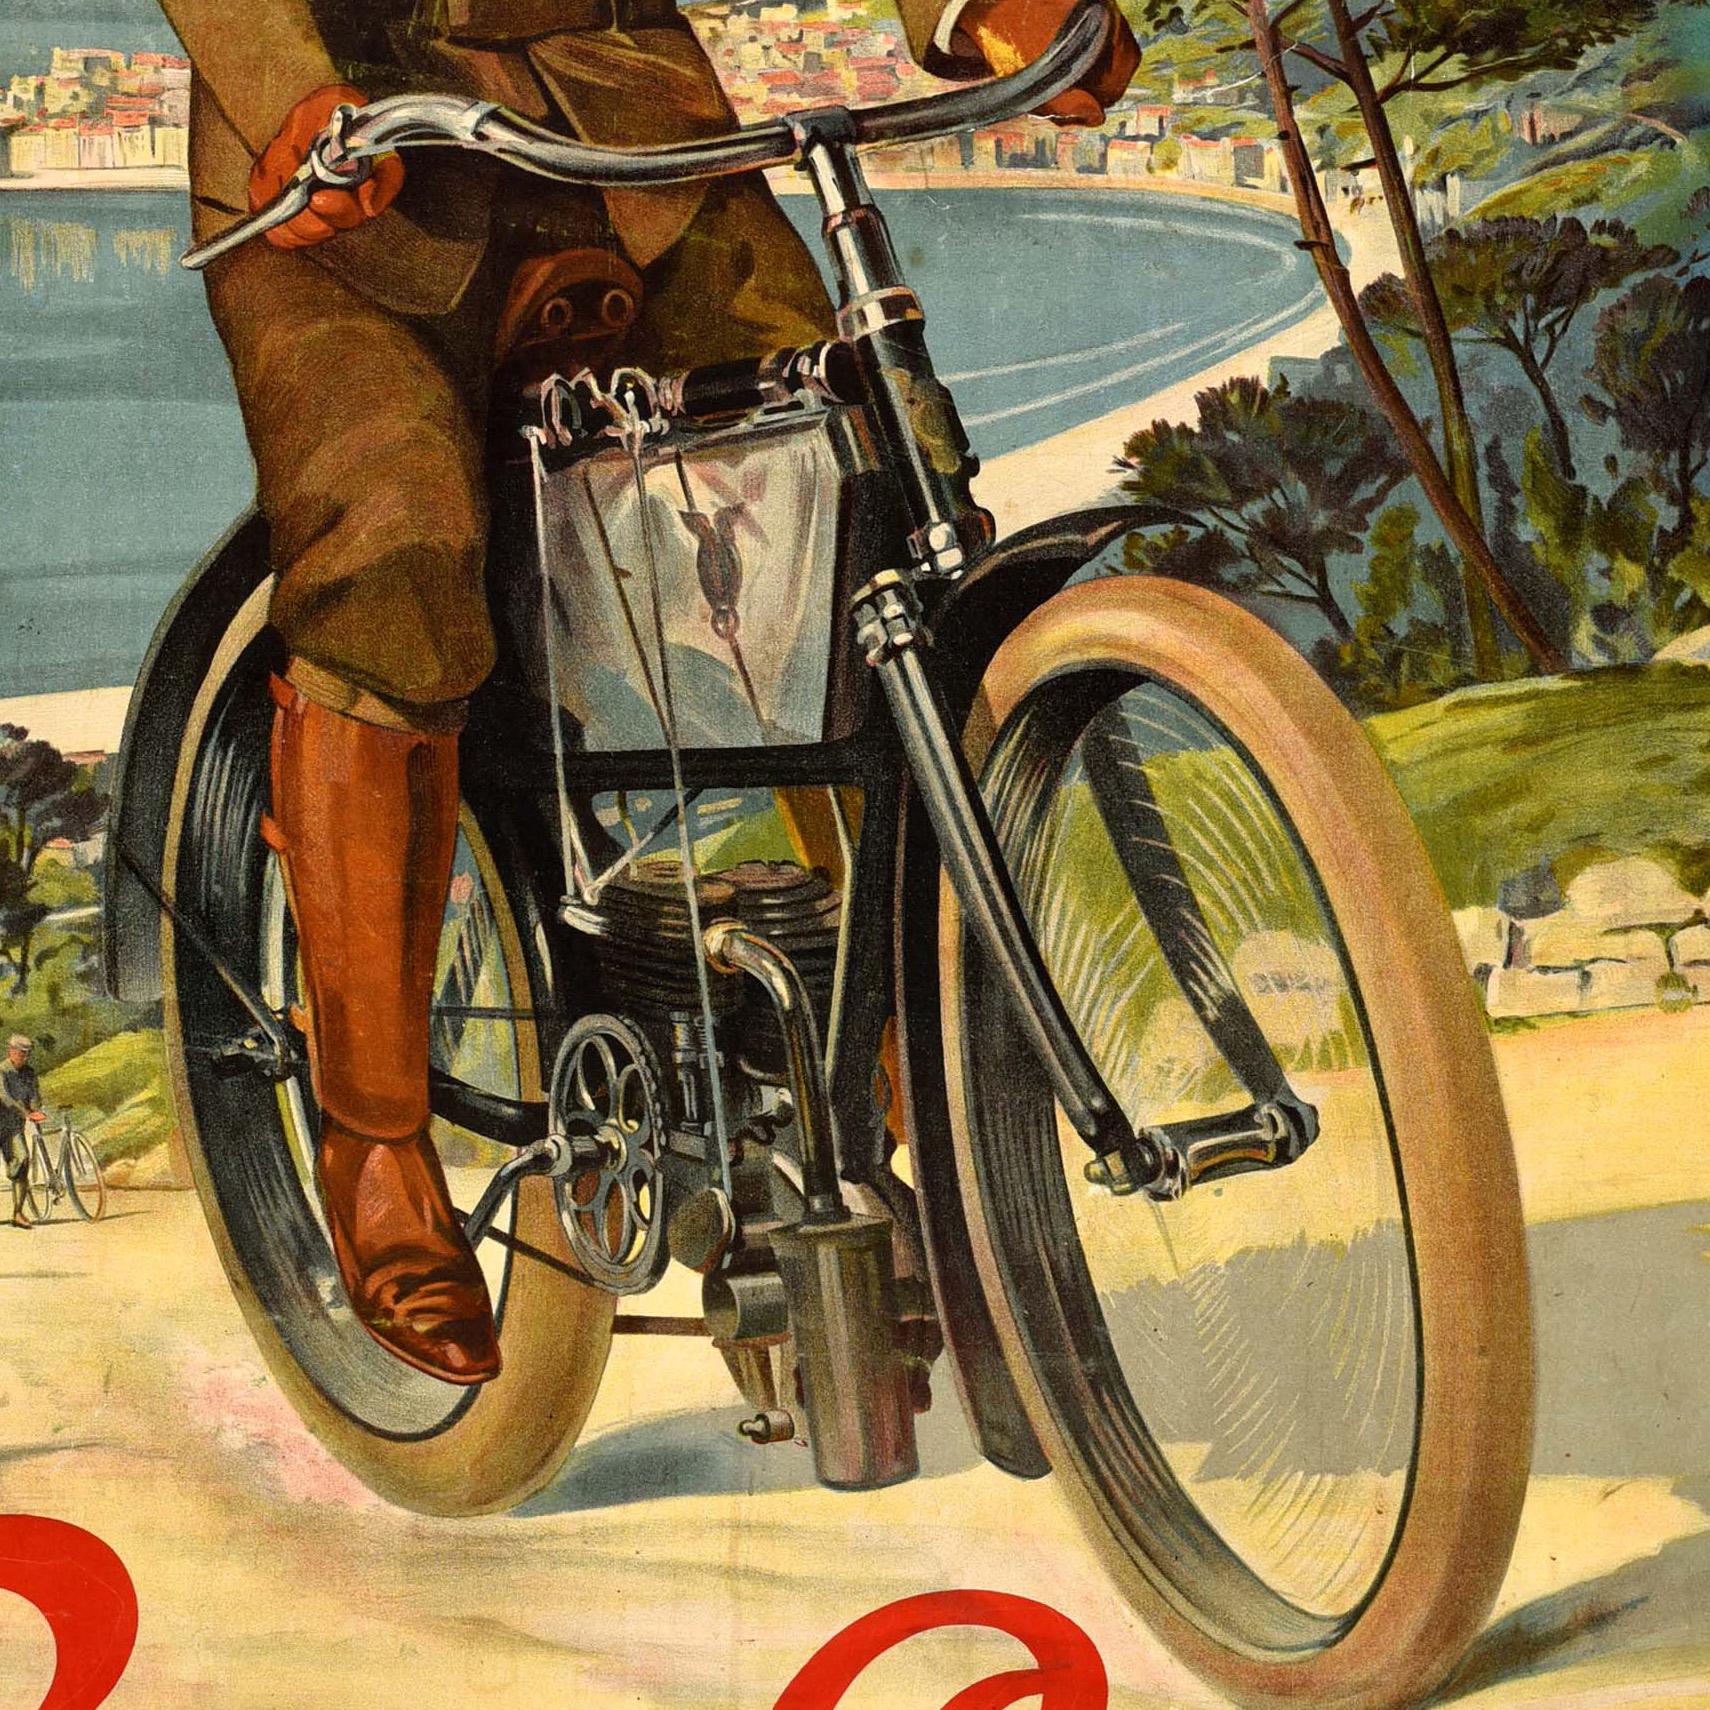 Originales antikes Werbeplakat für Griffon-Motorräder mit einem Werk des französischen Künstlers Frederic-Hugo de Alesi (1849-1906), das einen Mann mit Schnurrbart zeigt, der mit Handschuhen, Stiefeln und einer Mütze bekleidet ist und mit seinem